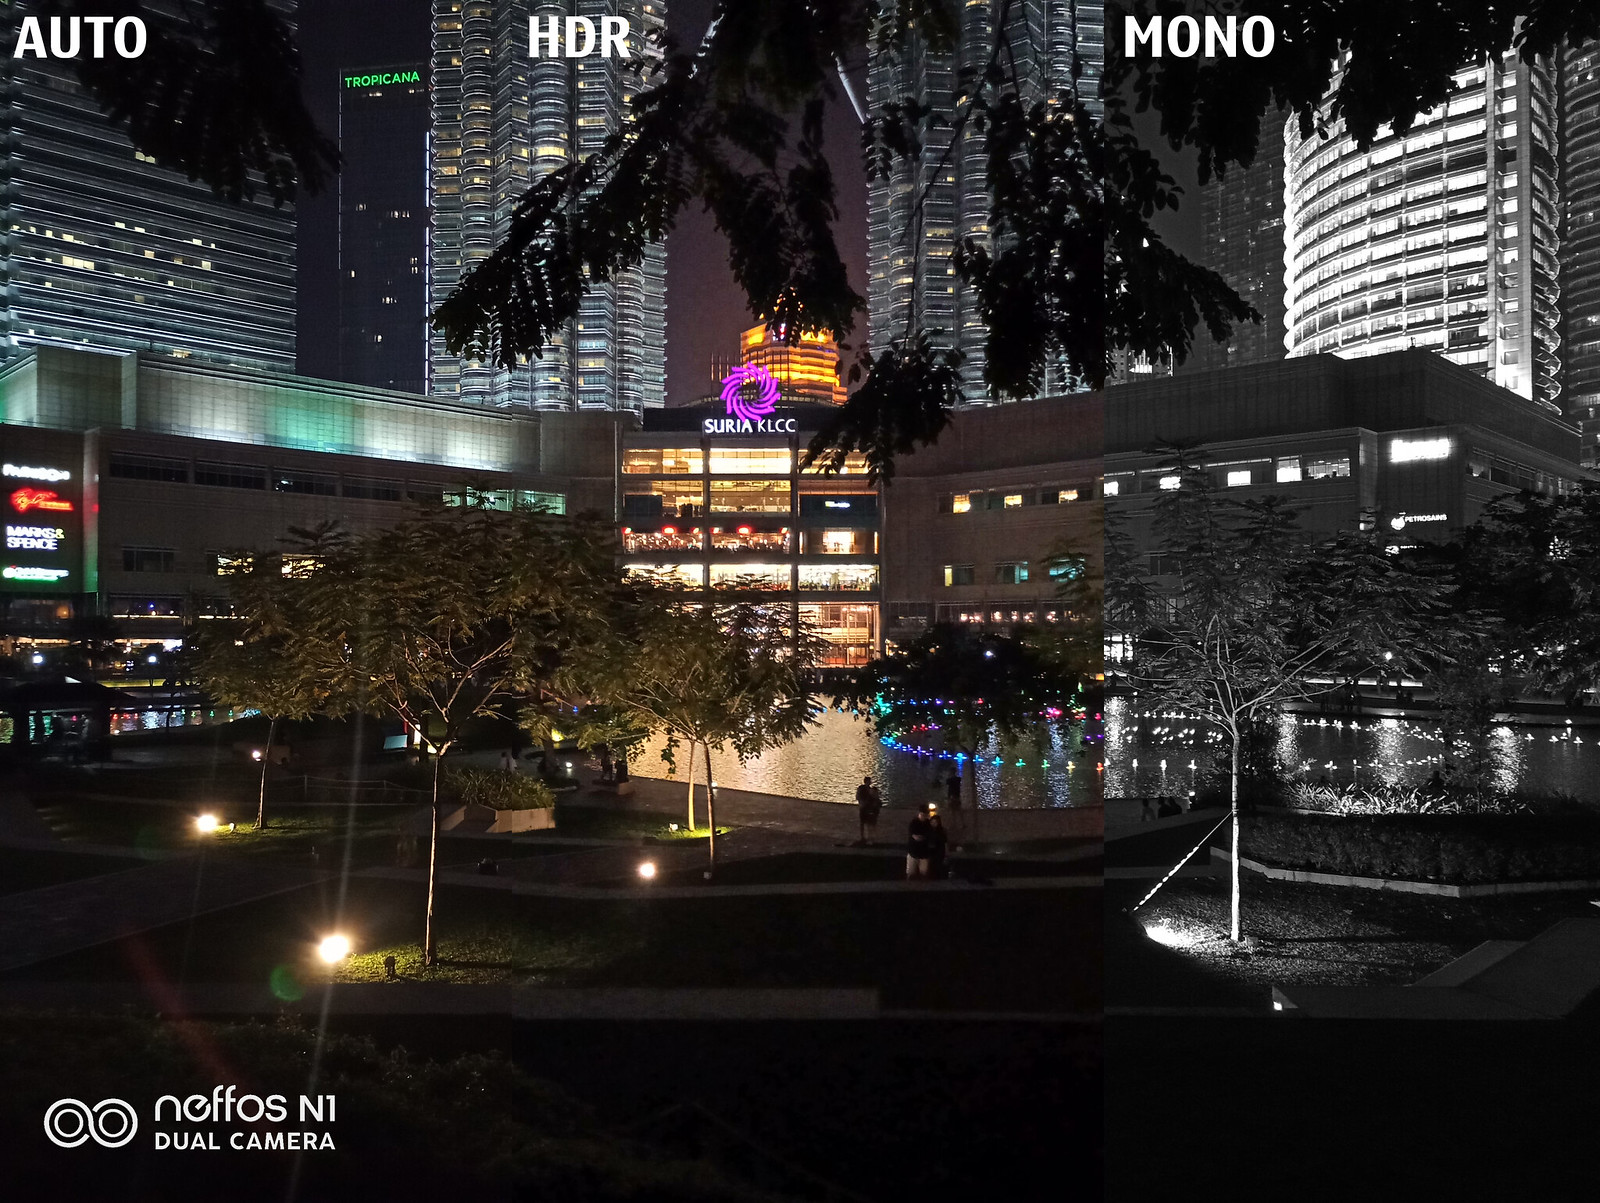 Auto, HDR, Mono comparison